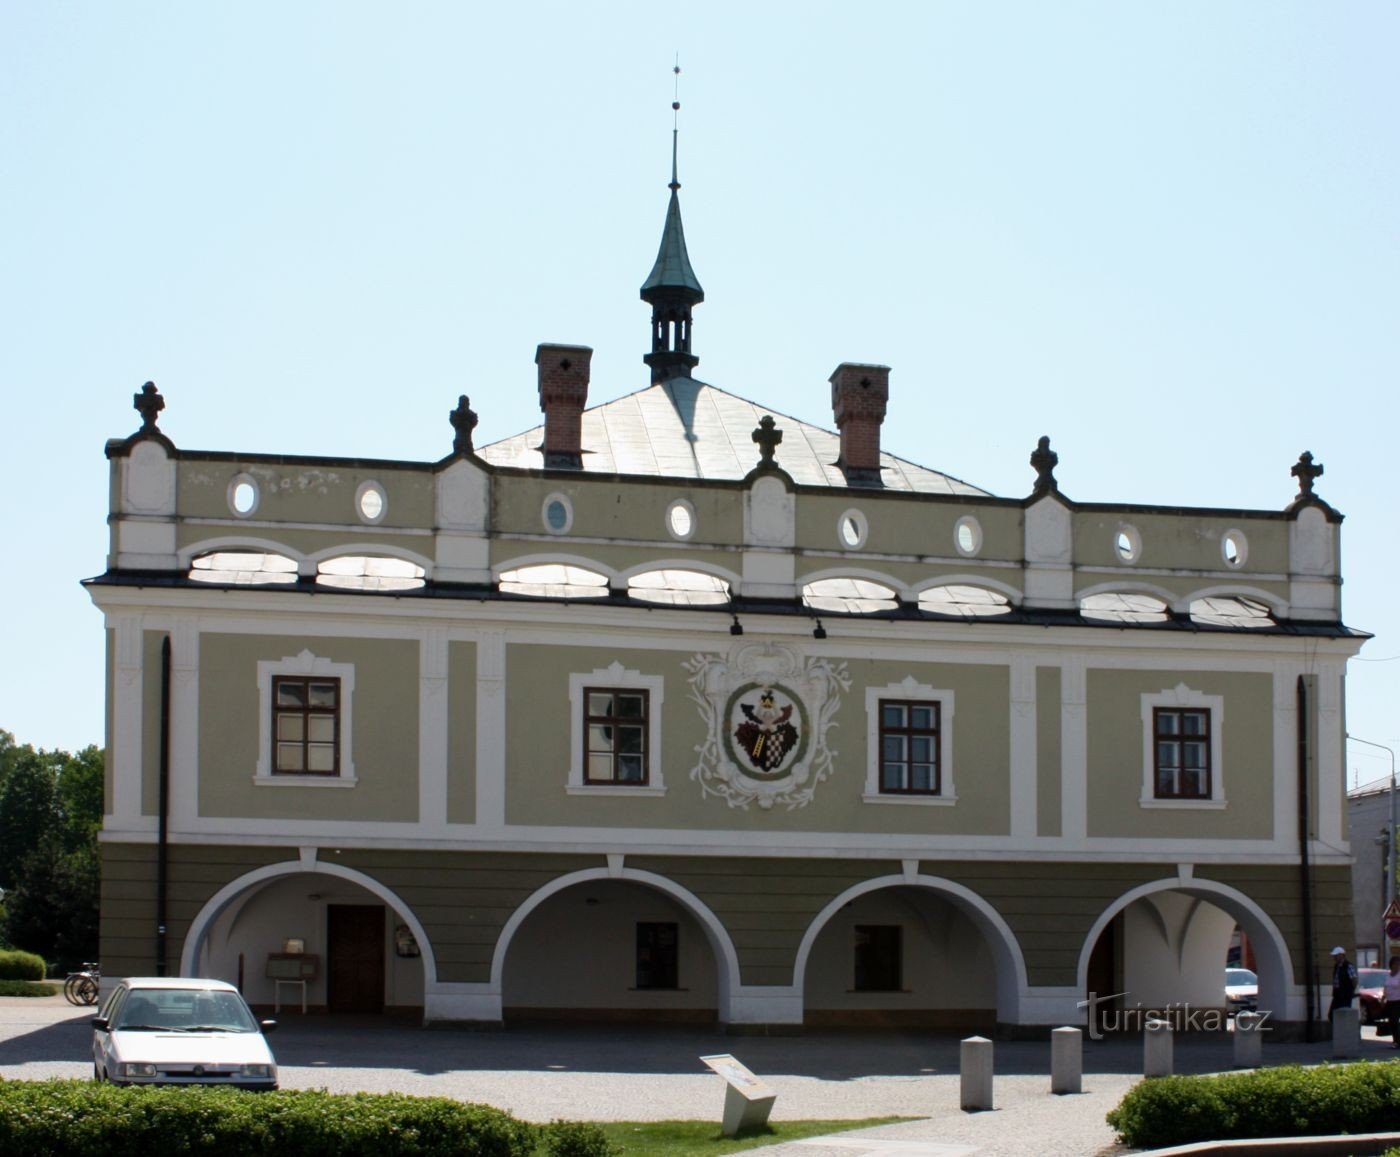 Spa Bohdaneč - Rådhus